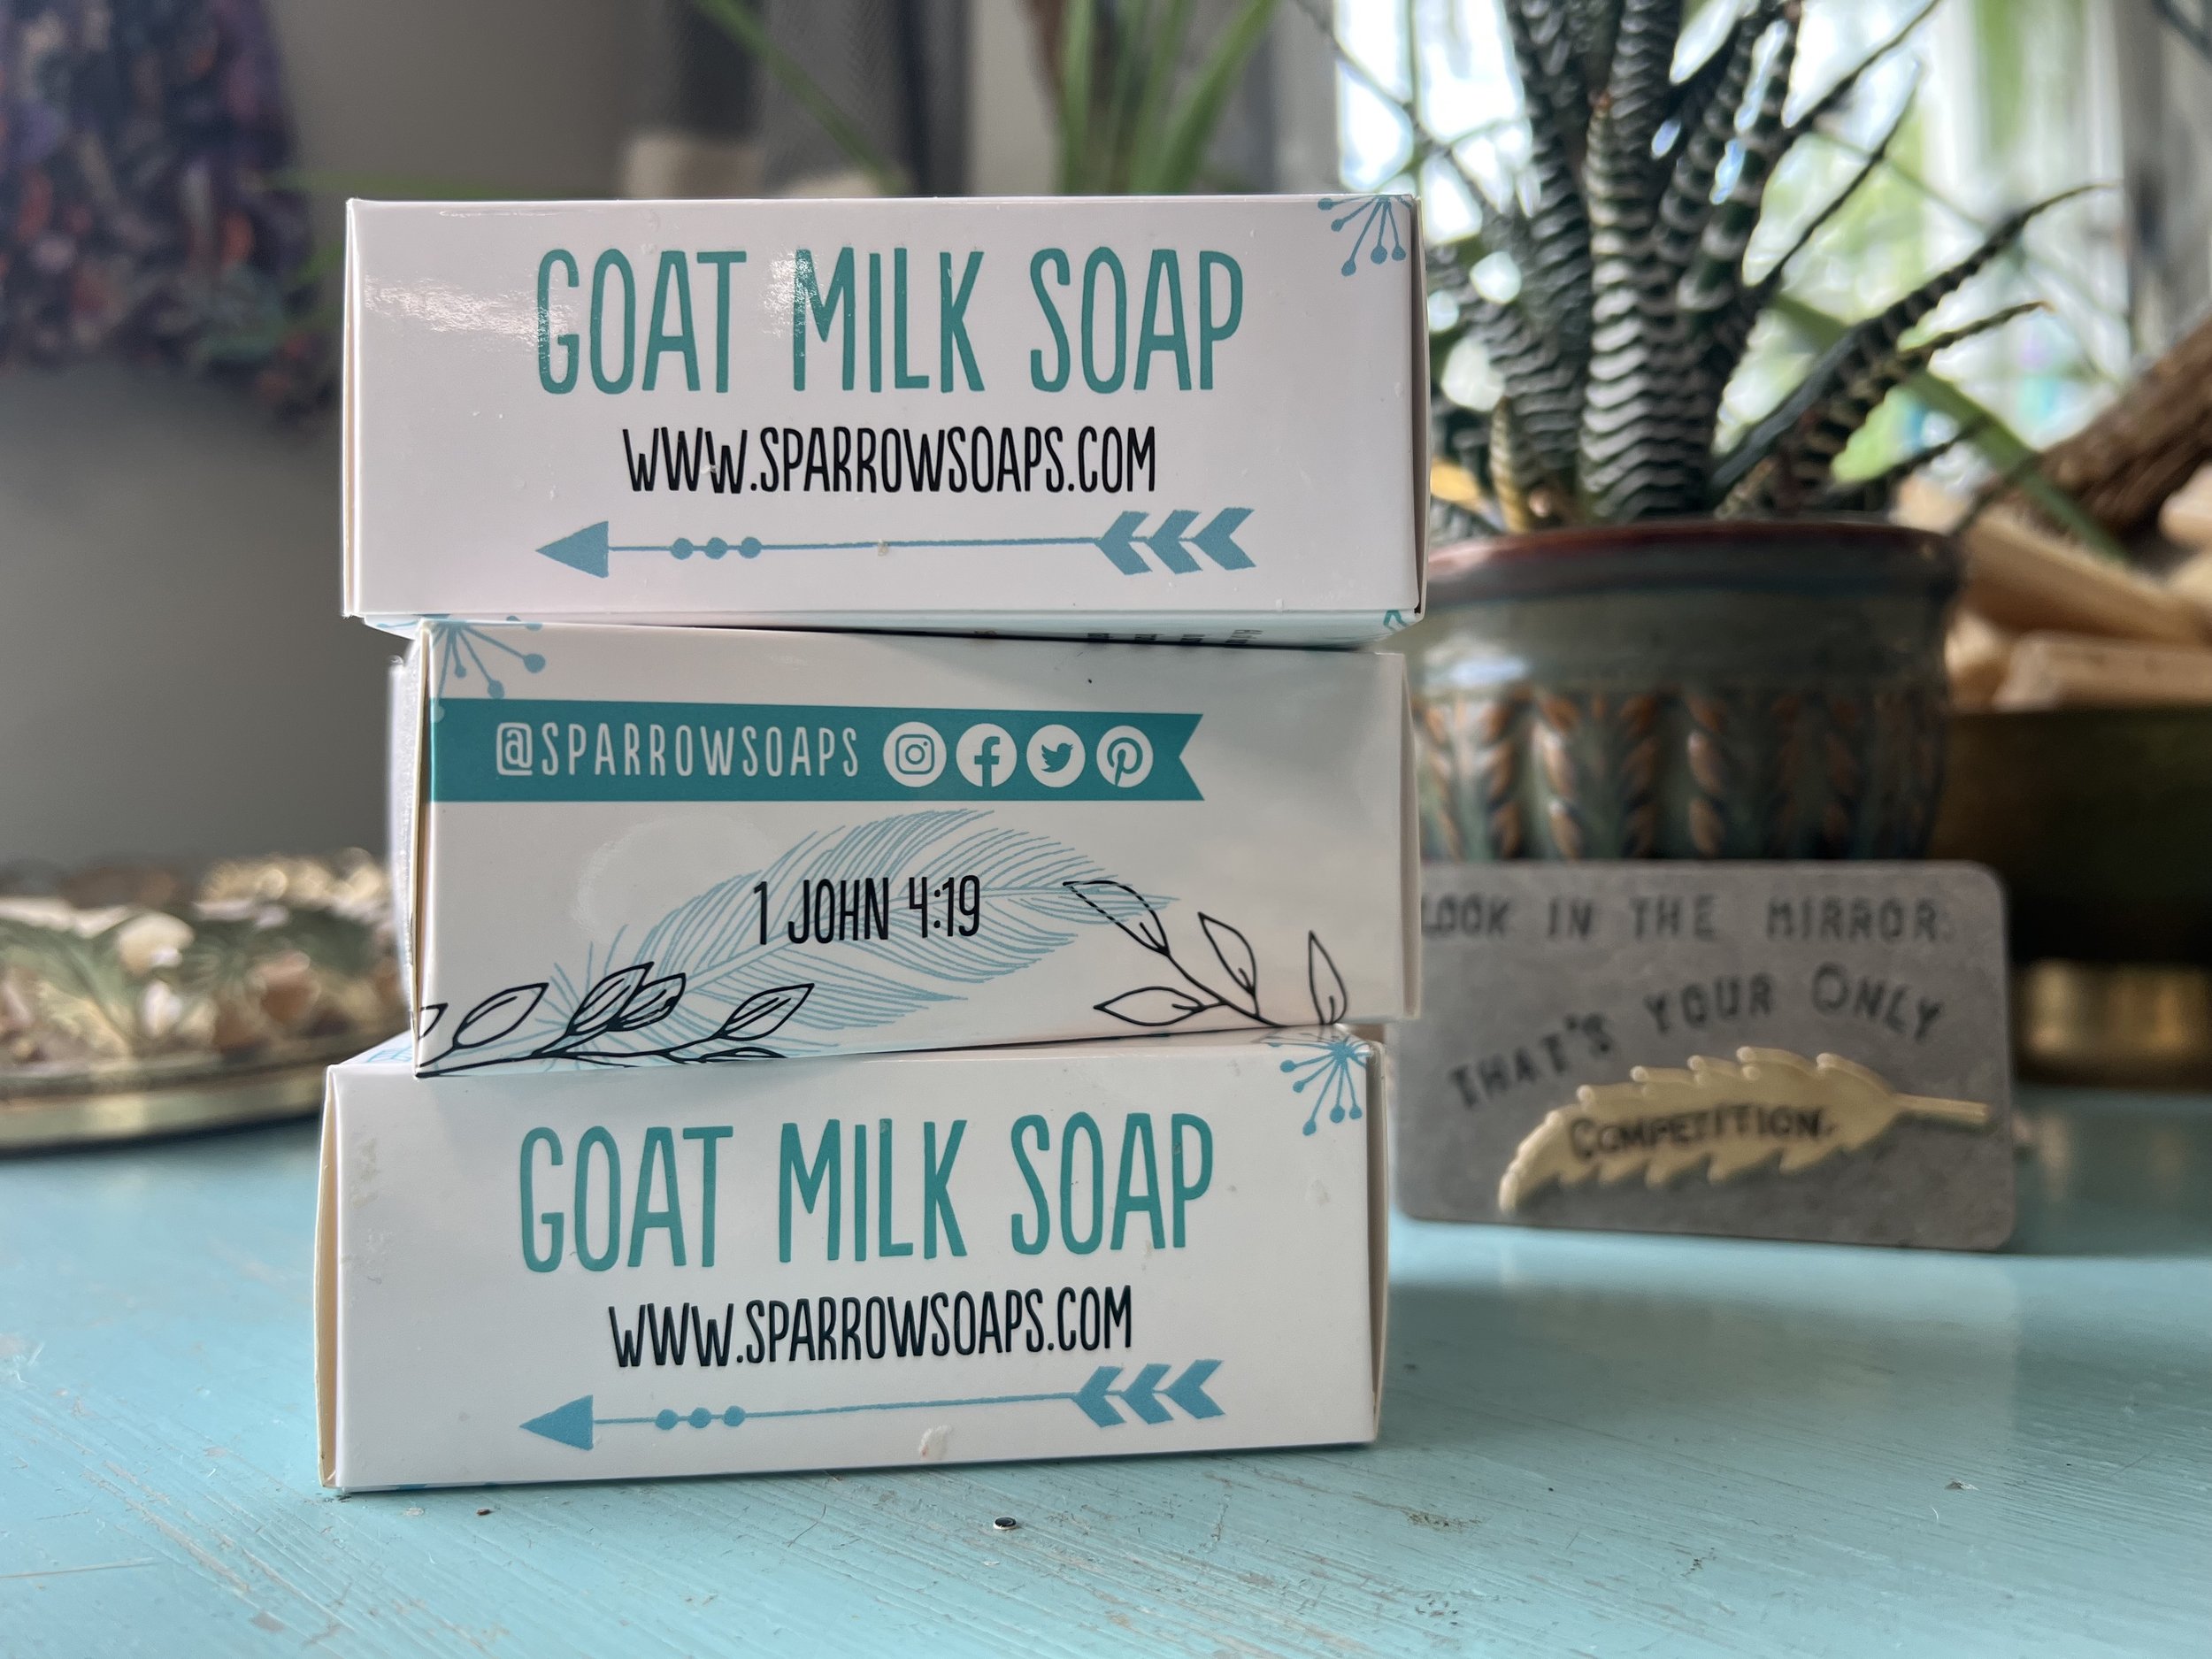 Special Values, Goat Milk Soap